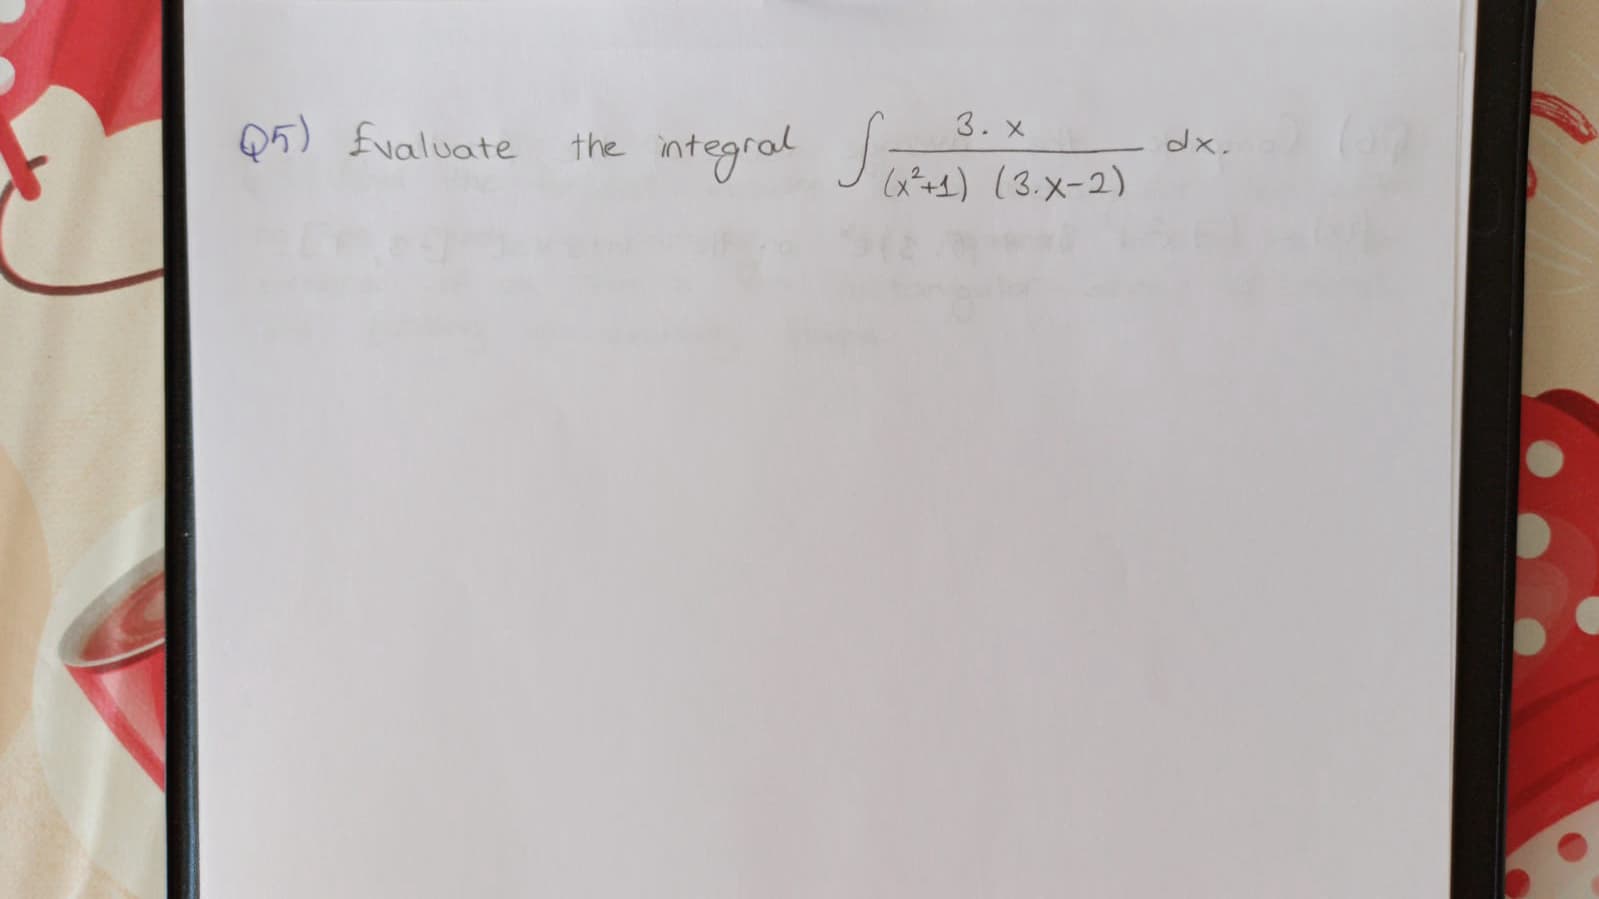 3. x
Q5) fvaluate
ntegral Sae
the
dx.
(x+1) (3.x-2)
